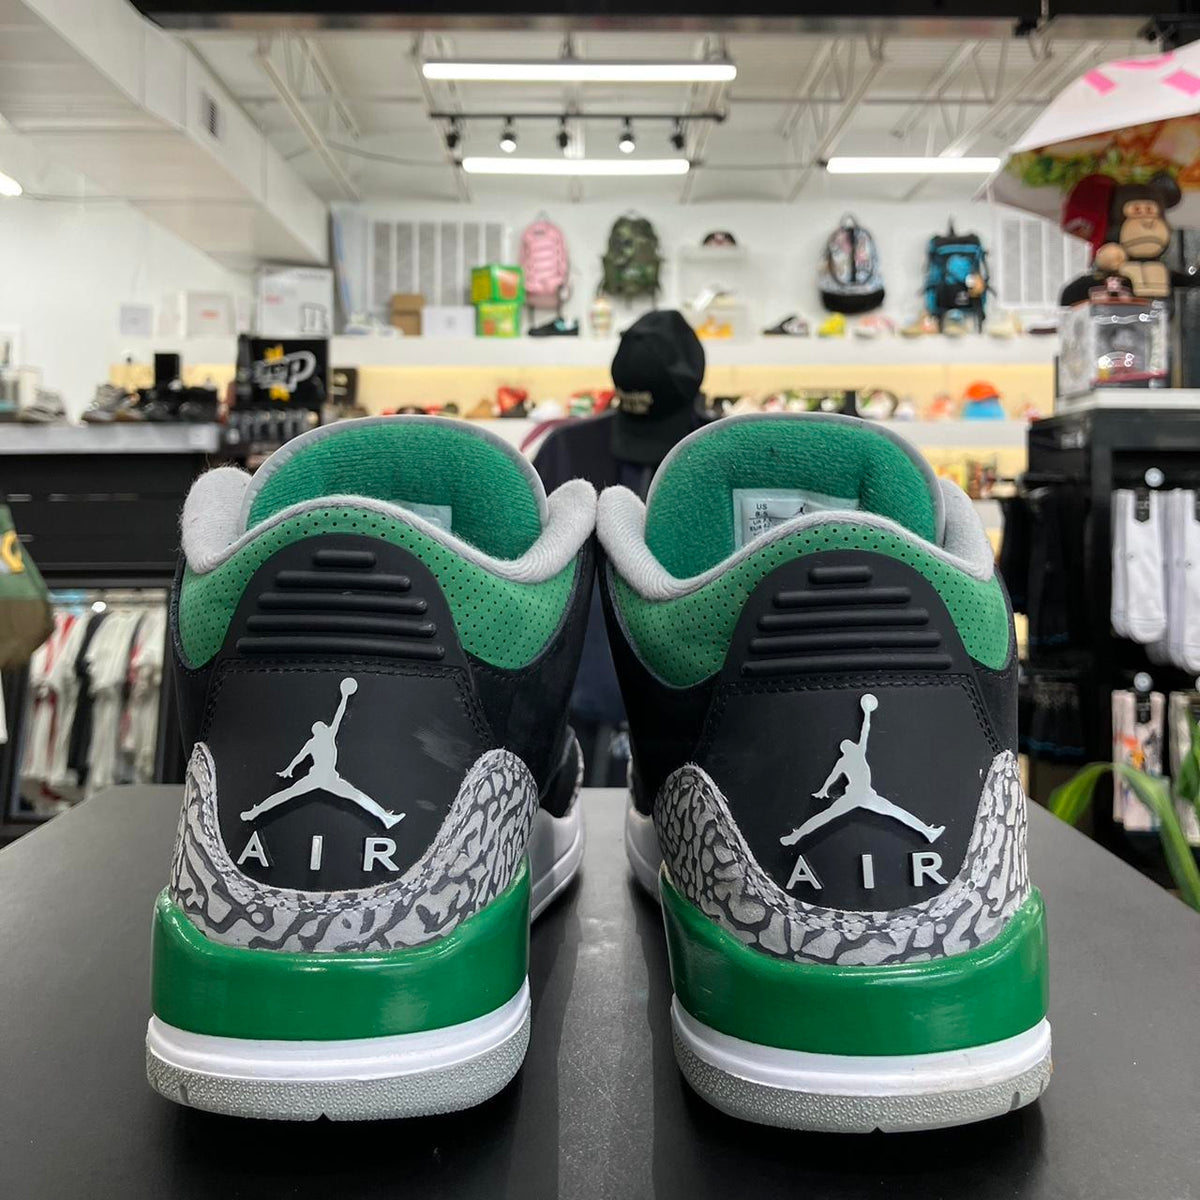 Air Jordan 3 Pine Green (8.5)